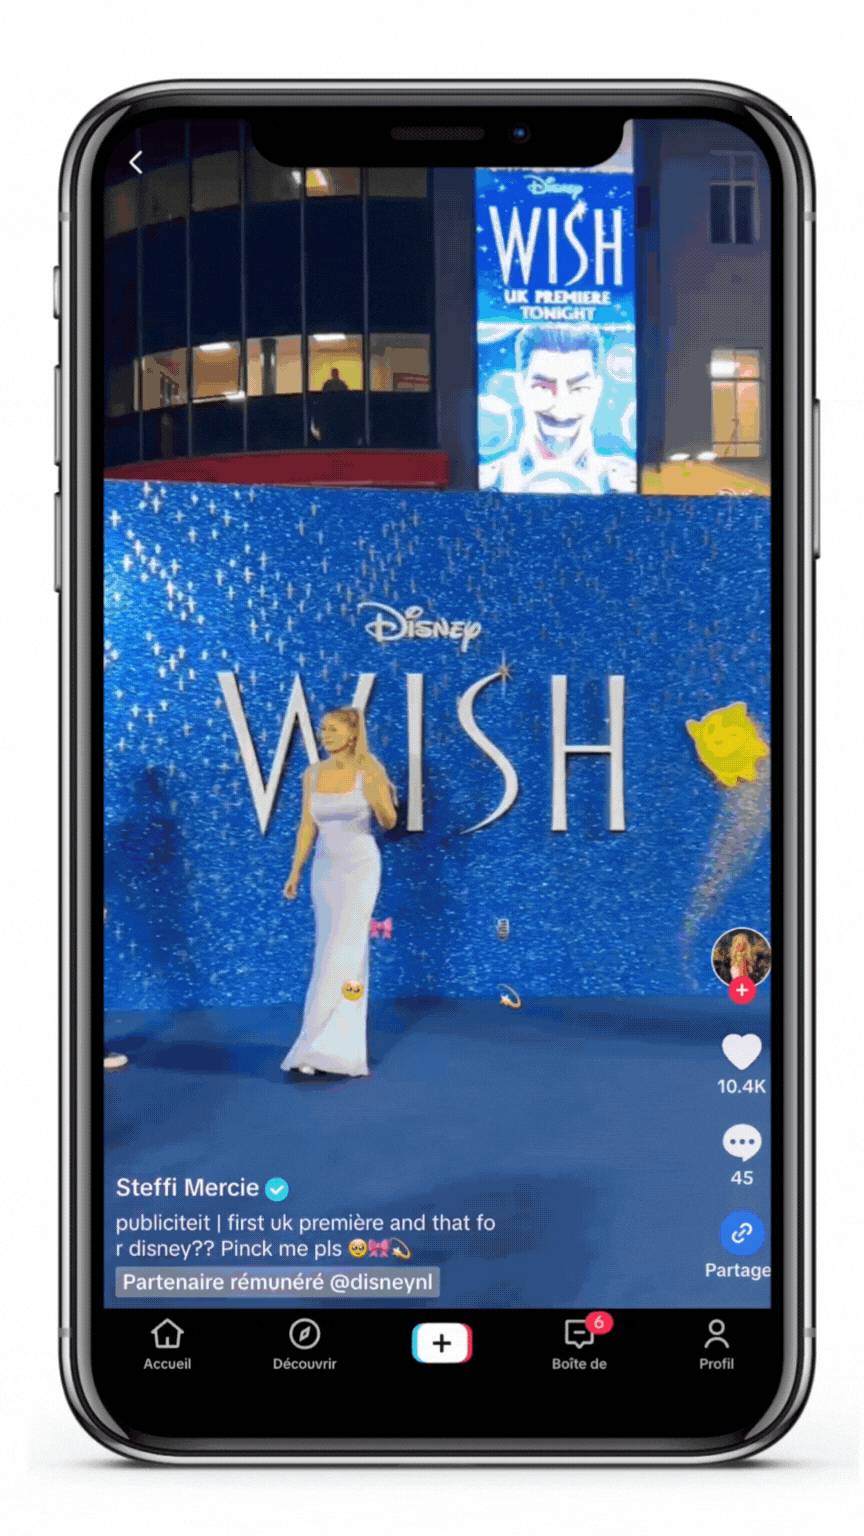 Wish Disney movie influencer campaign stellar